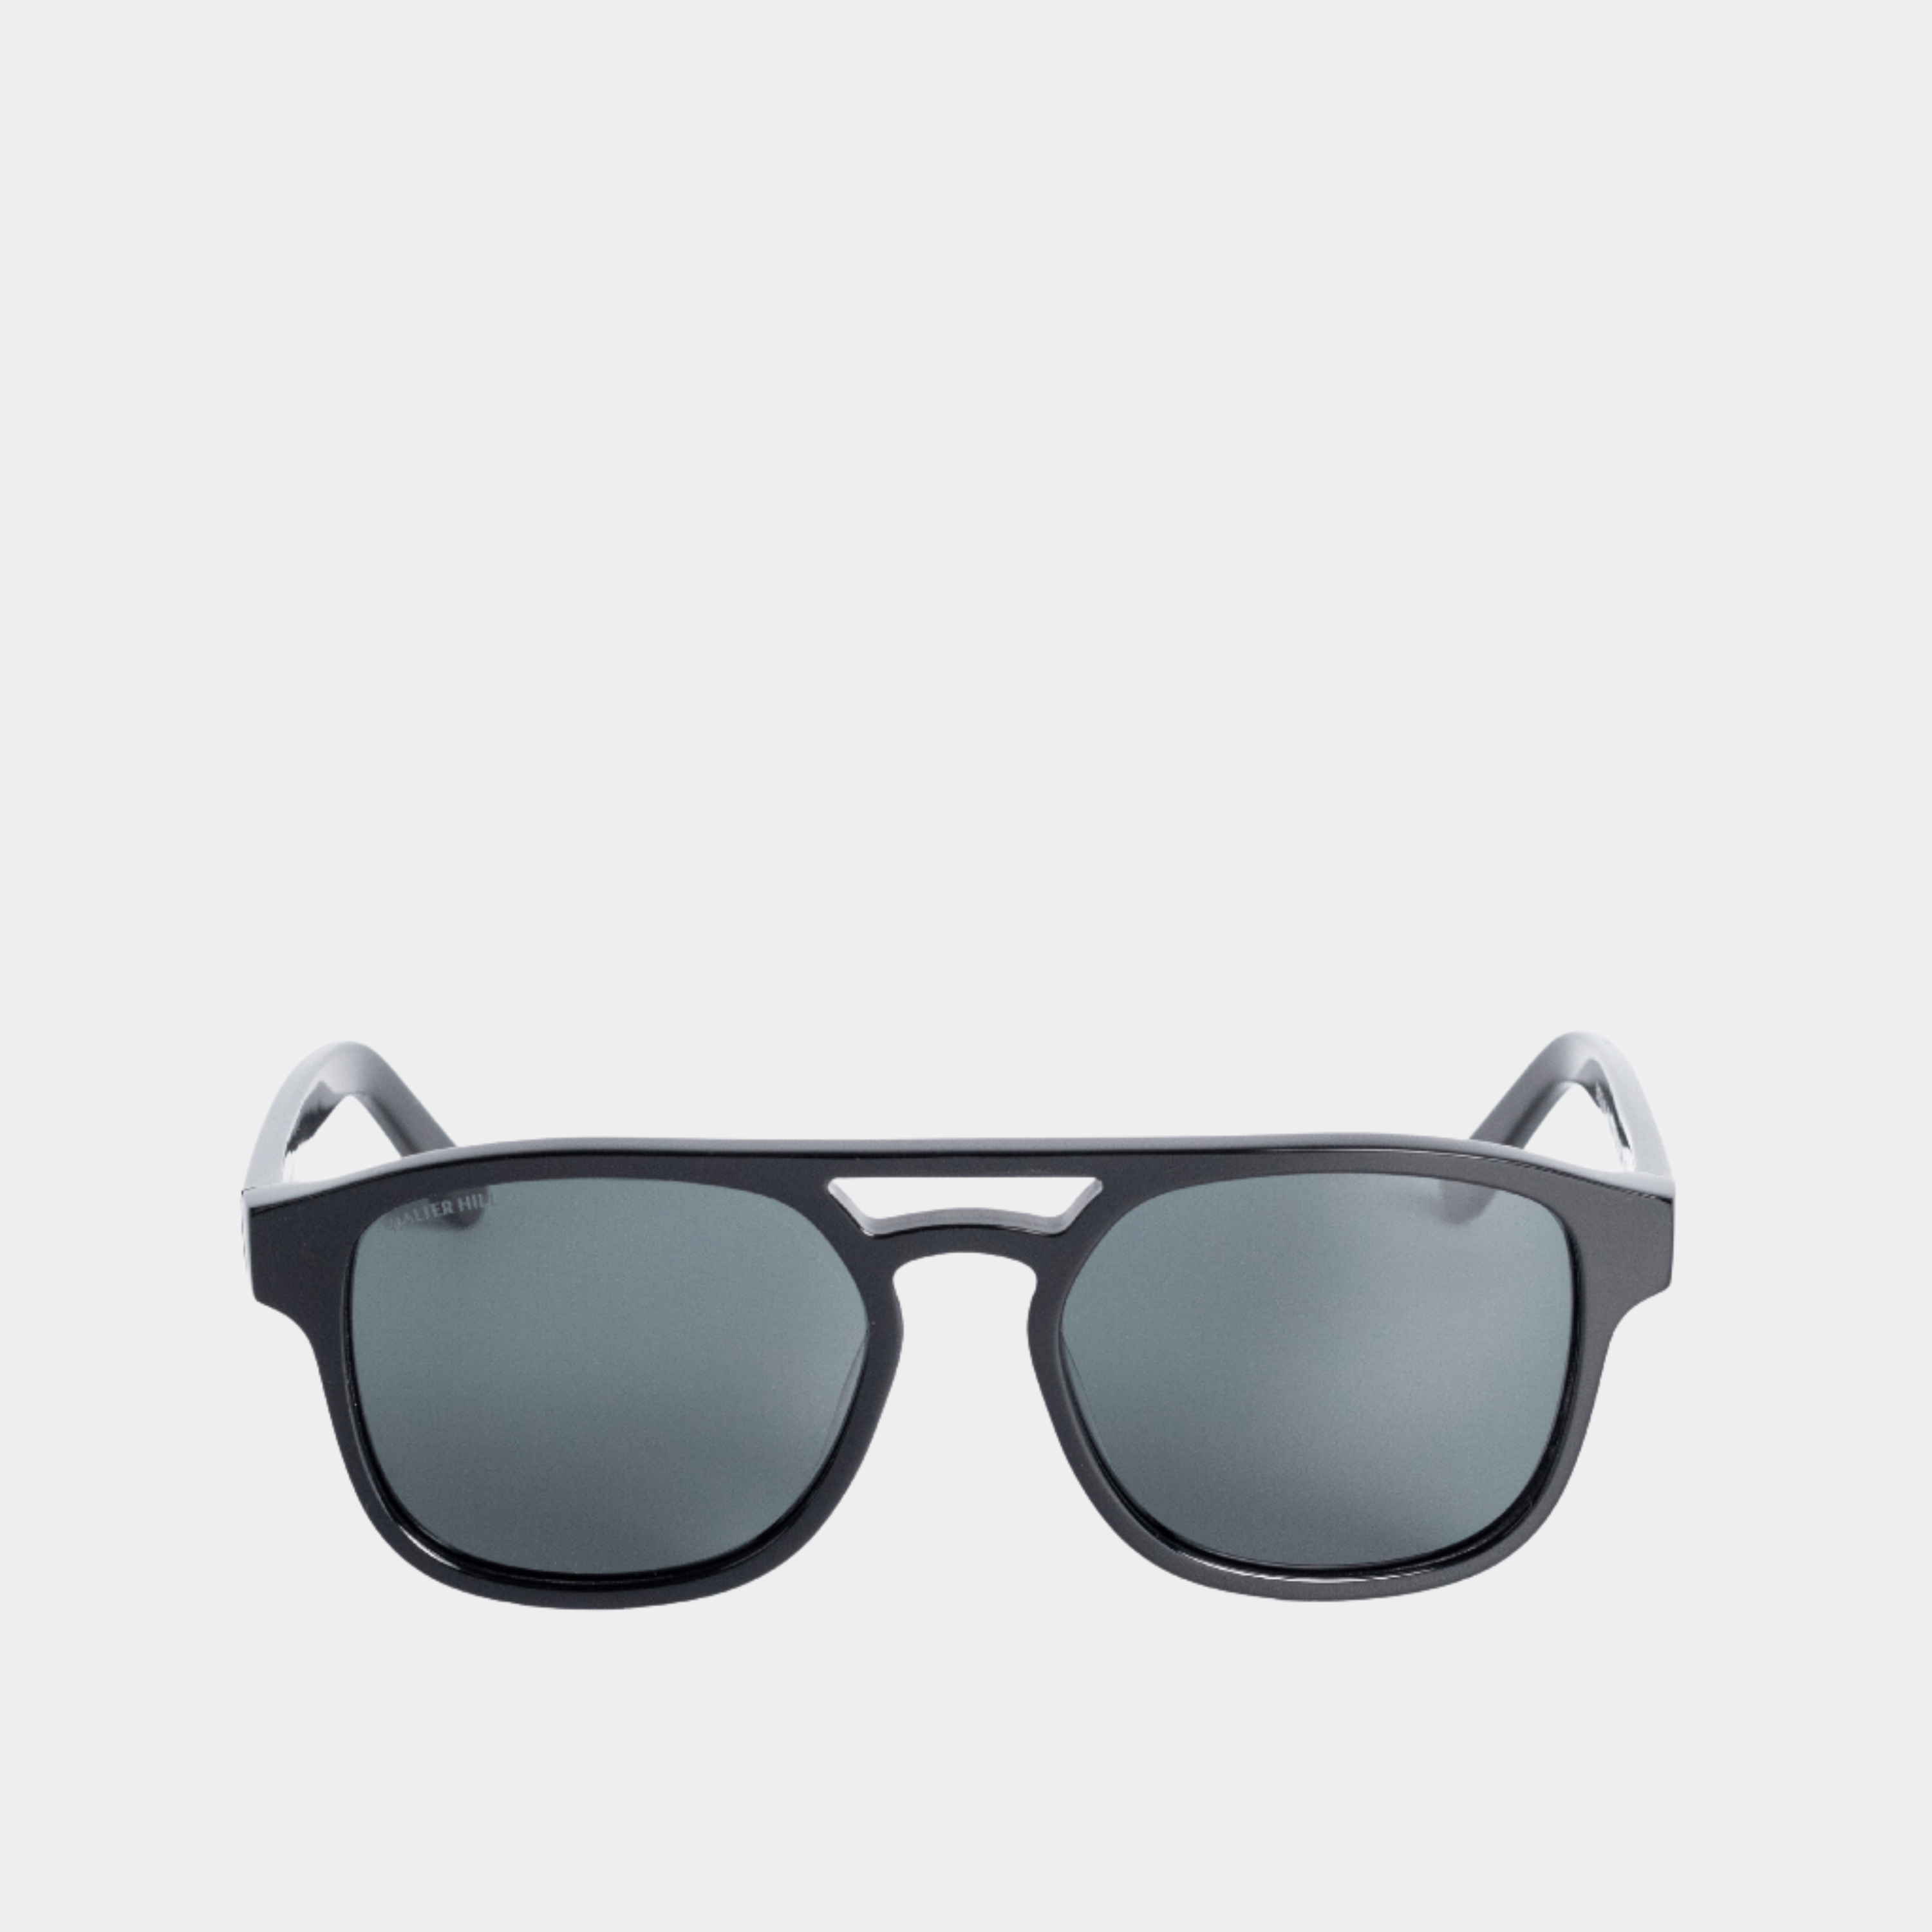 Walter Hill Sunglasses Standard AIRMAN - Black